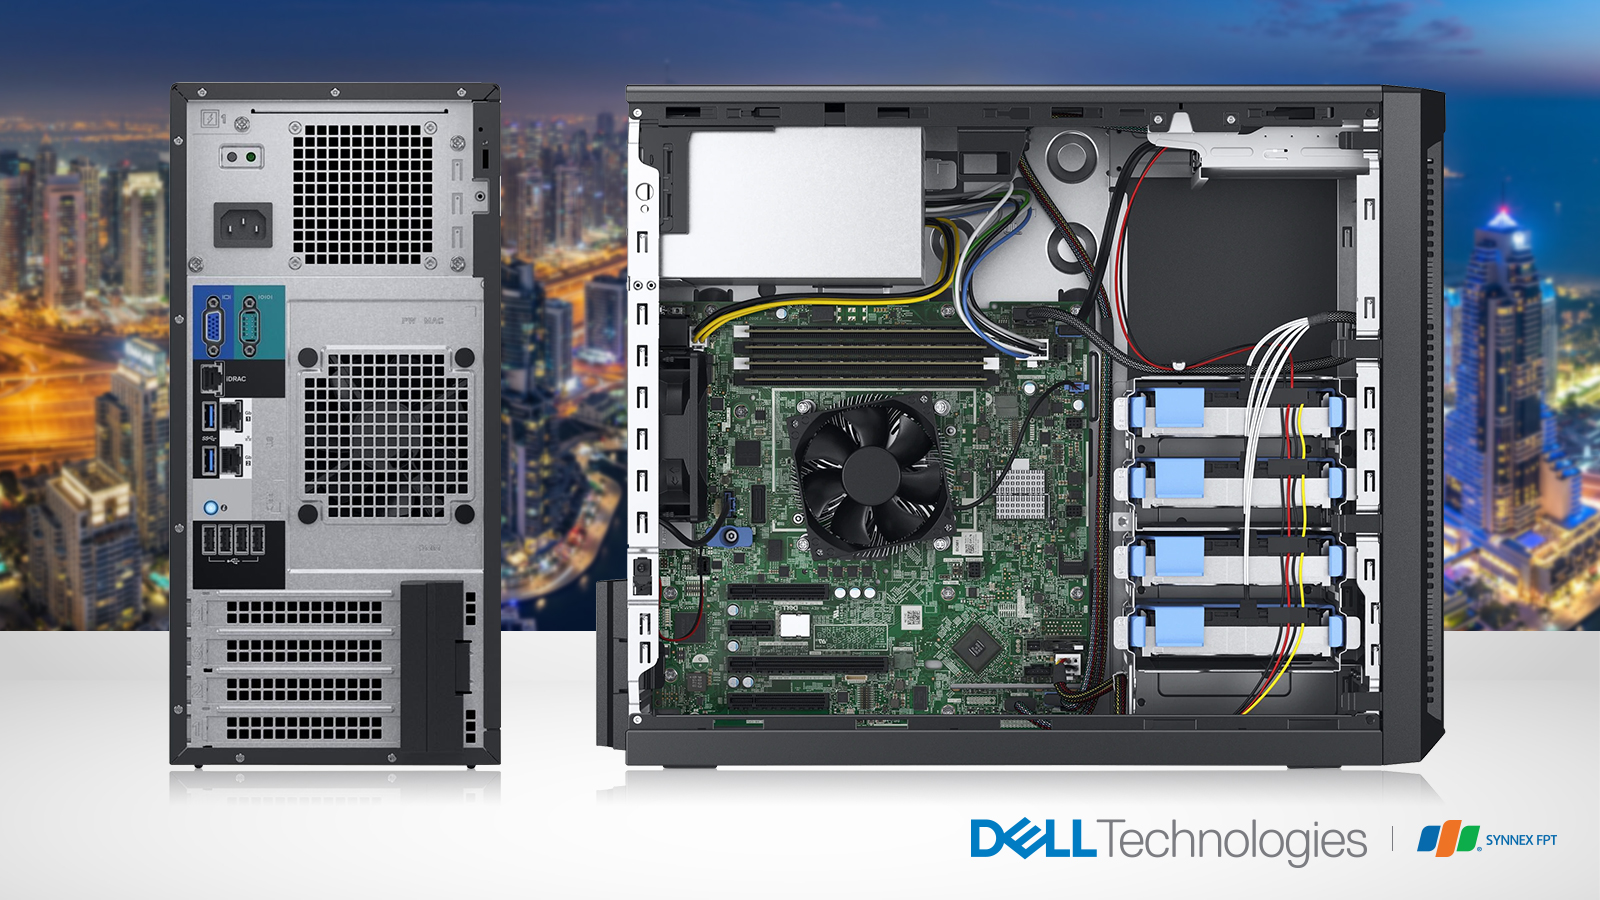 Máy chủ DellEMC PowerEdge T140 - Máy chủ đa năng tầm trung mạnh mẽ